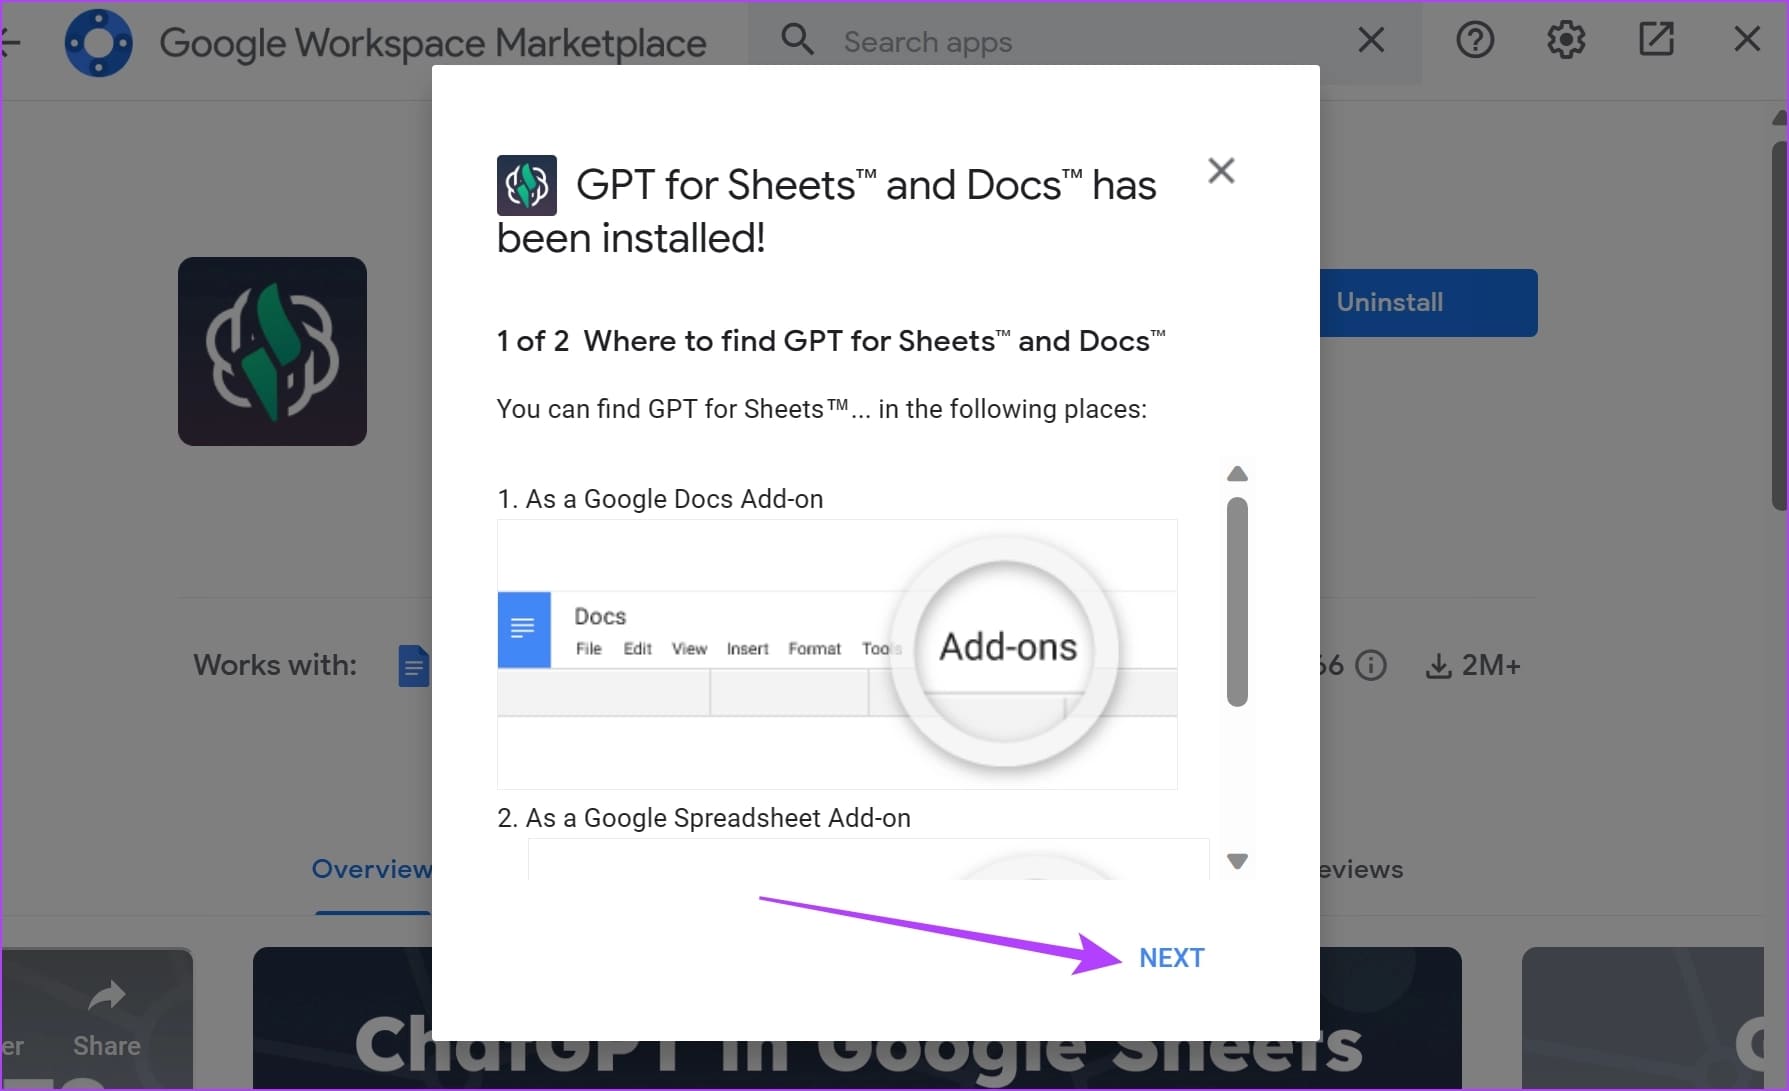 كيفية استخدام ChatGPT في Google Sheets على Windows و Mac - %categories